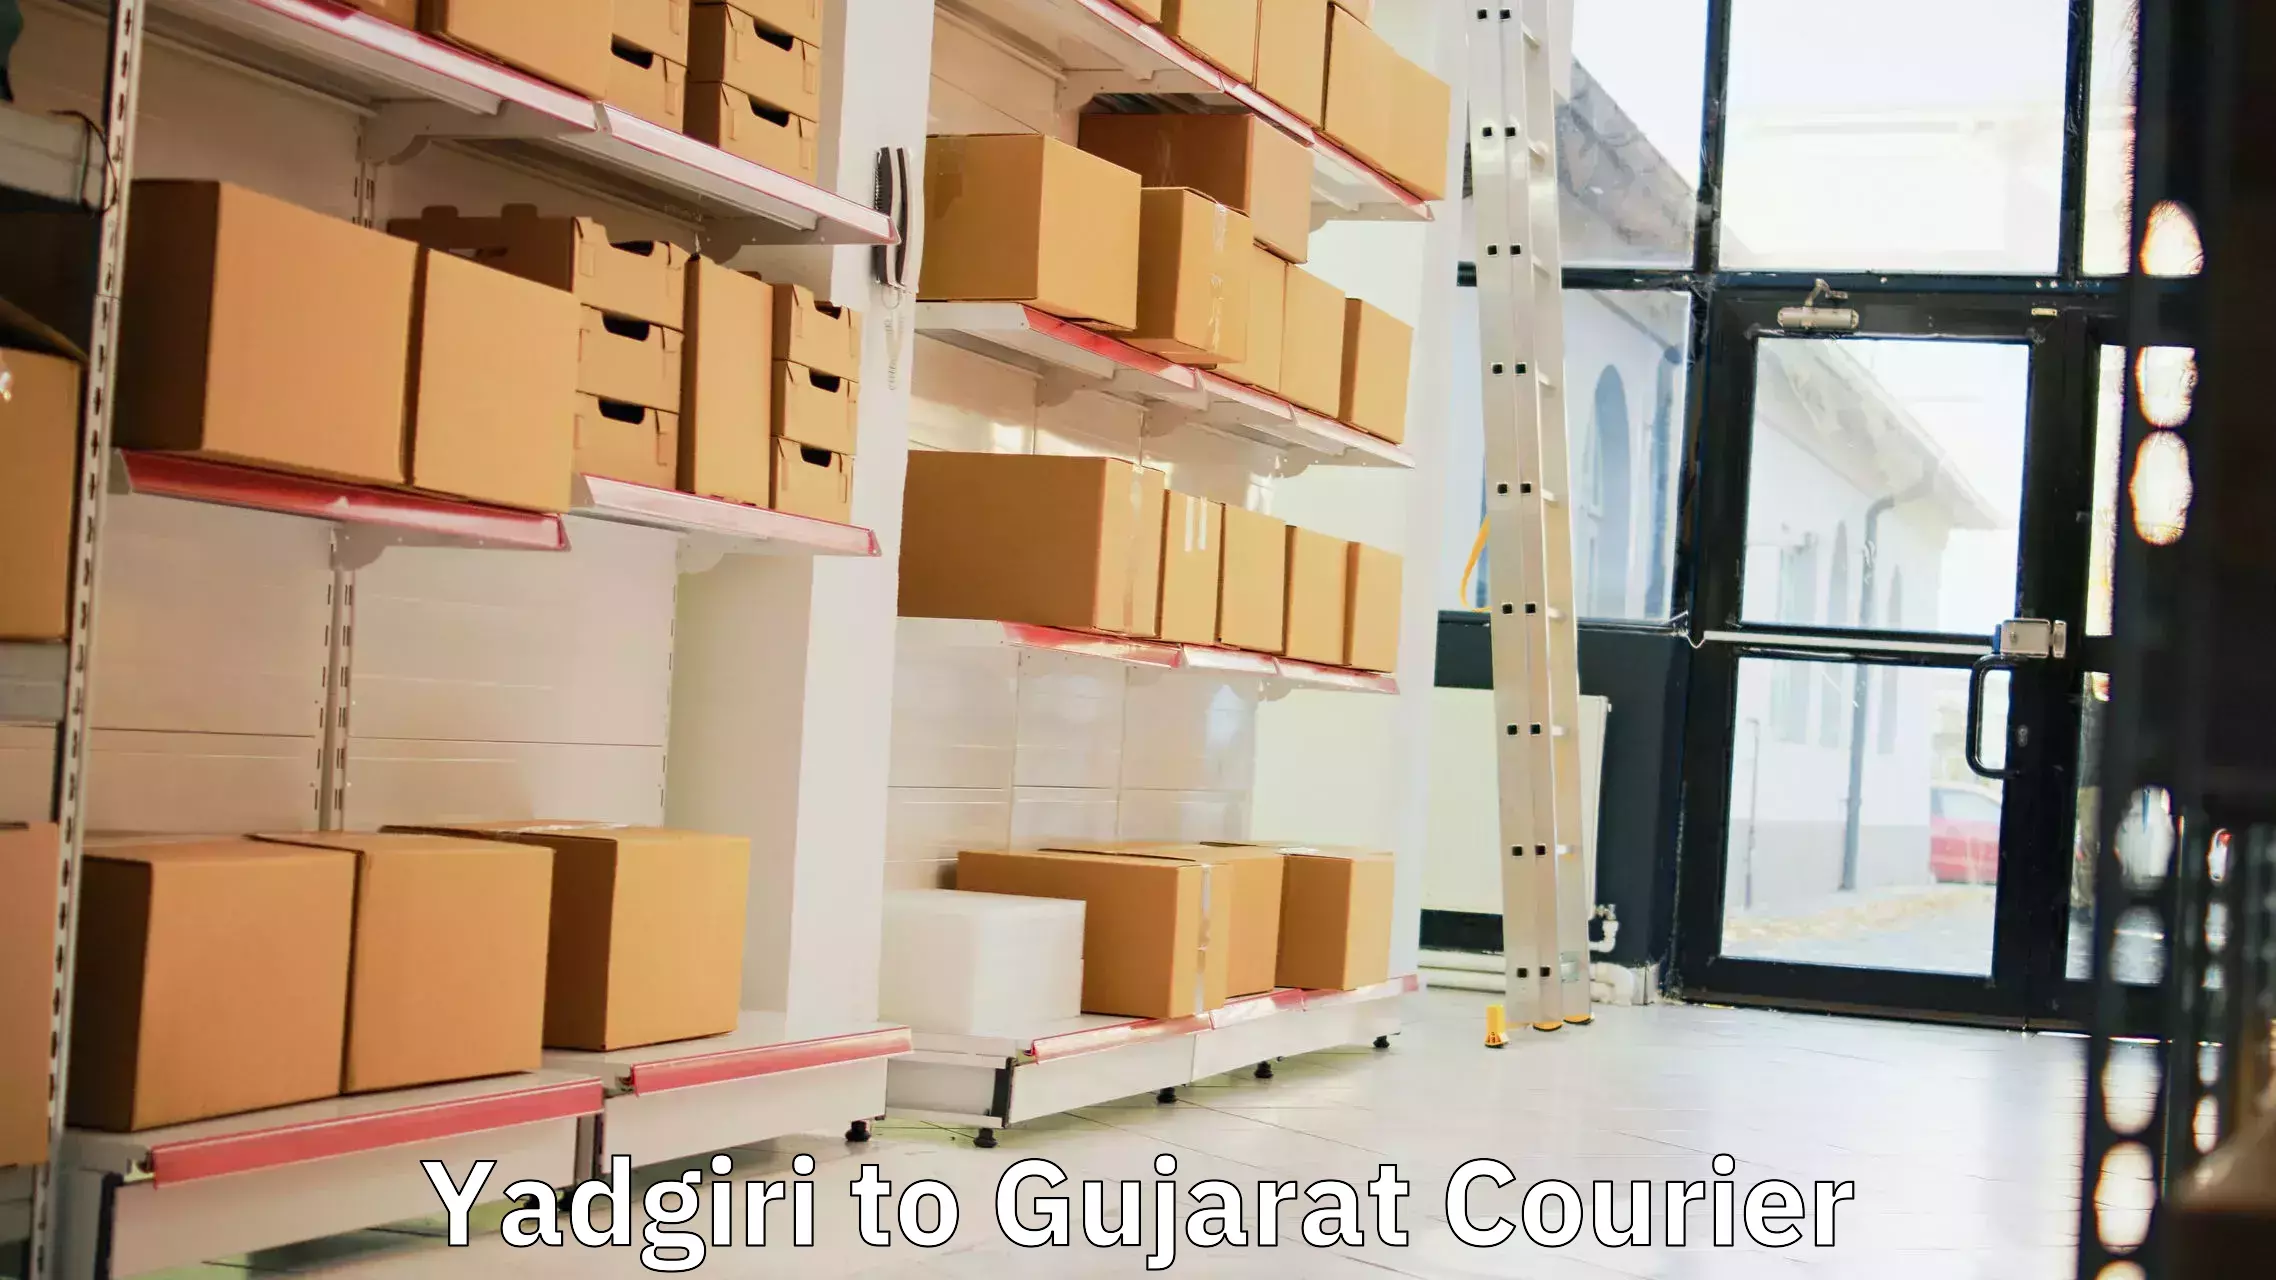 Nationwide delivery network Yadgiri to IIIT Surat